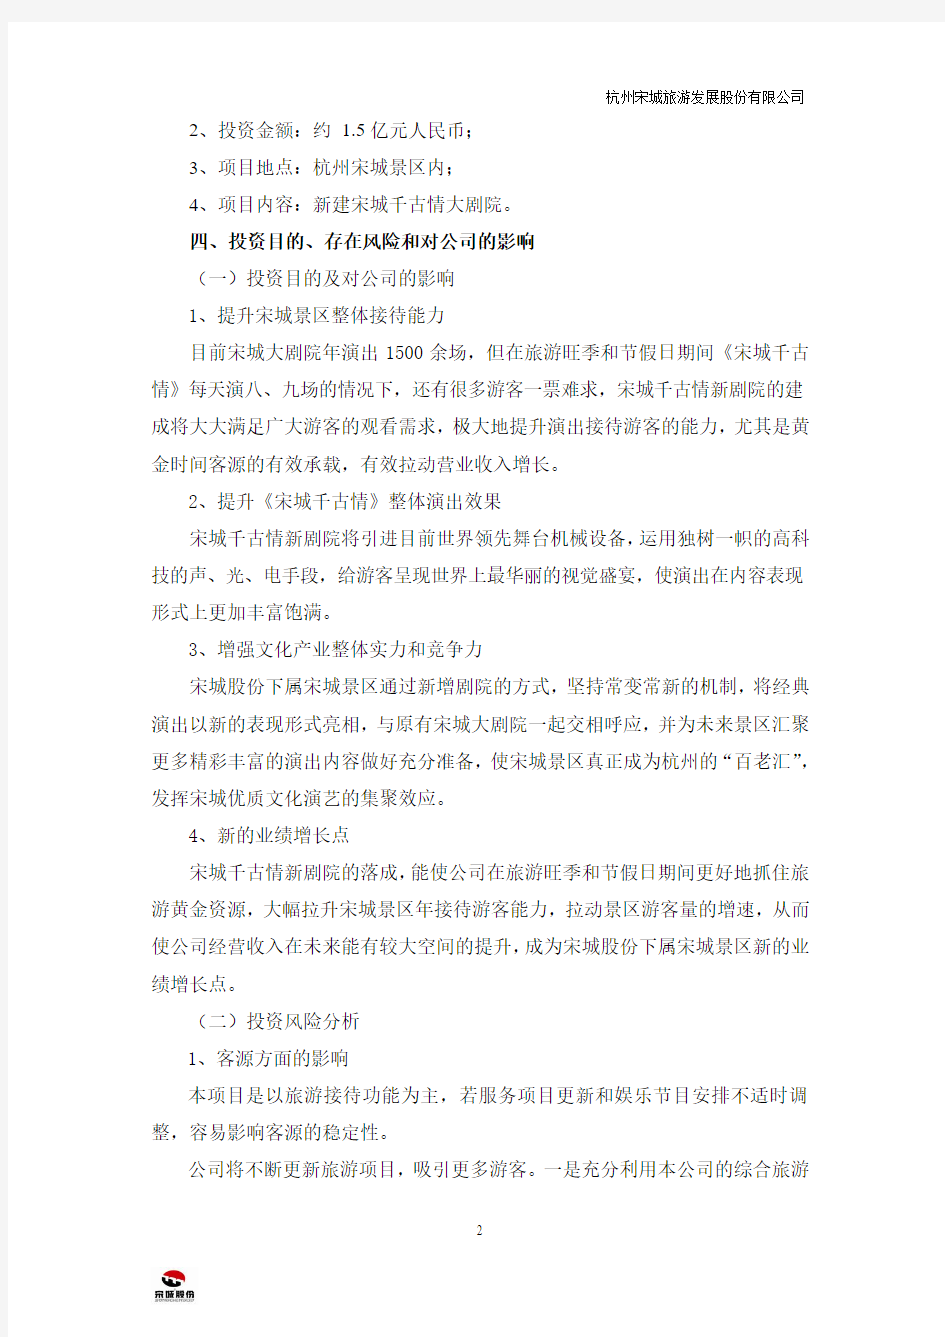 杭州宋城旅游发展股份有限公司 投资公告